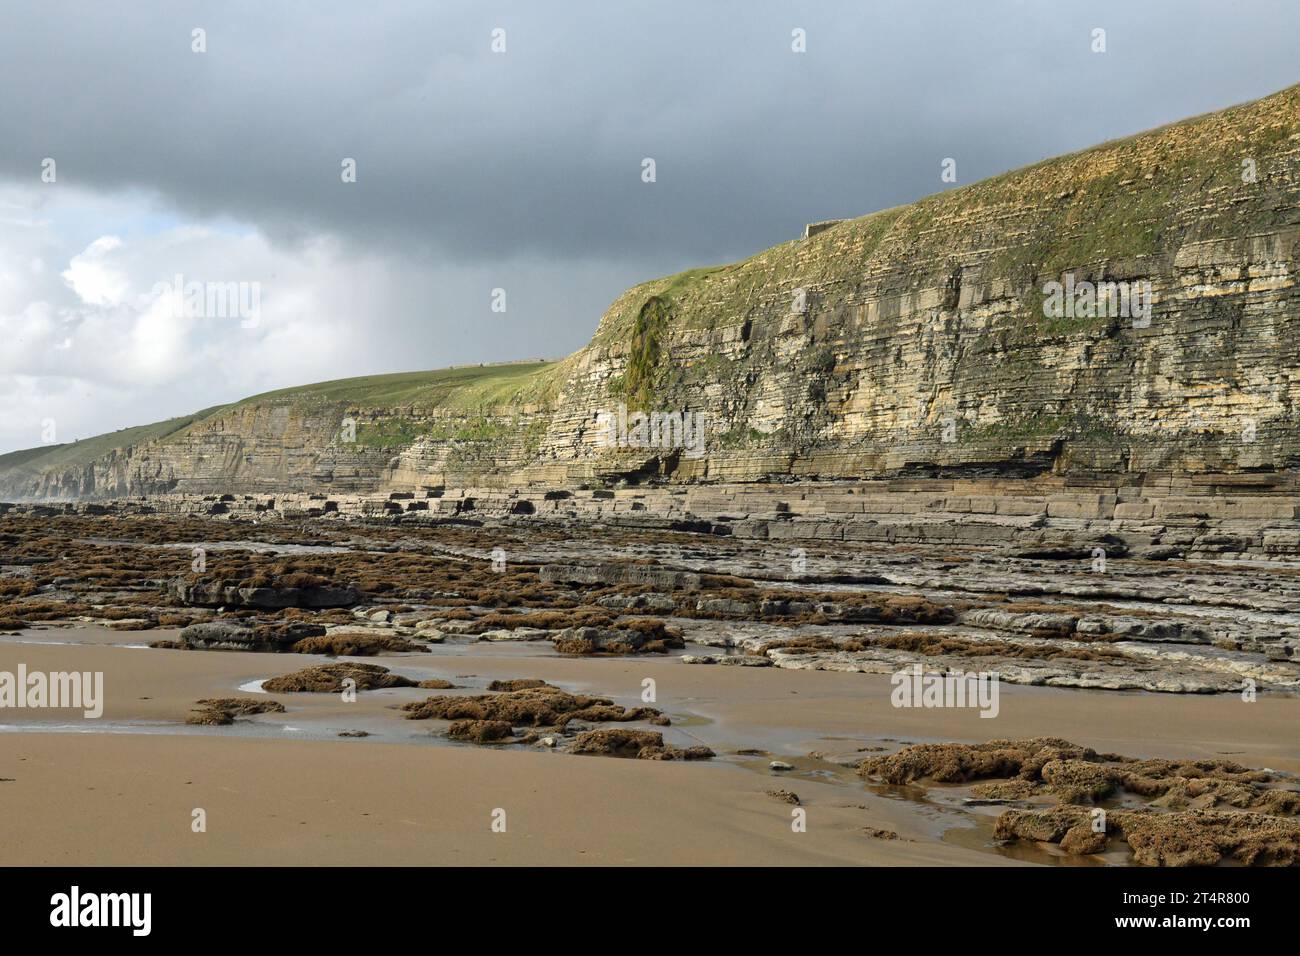 Vista ravvicinata delle scogliere di Dunraven Bay con strati di roccia vecchia davanti e sabbia sulla spiaggia davanti alla foto, nonché alcune nuvole grigie Foto Stock